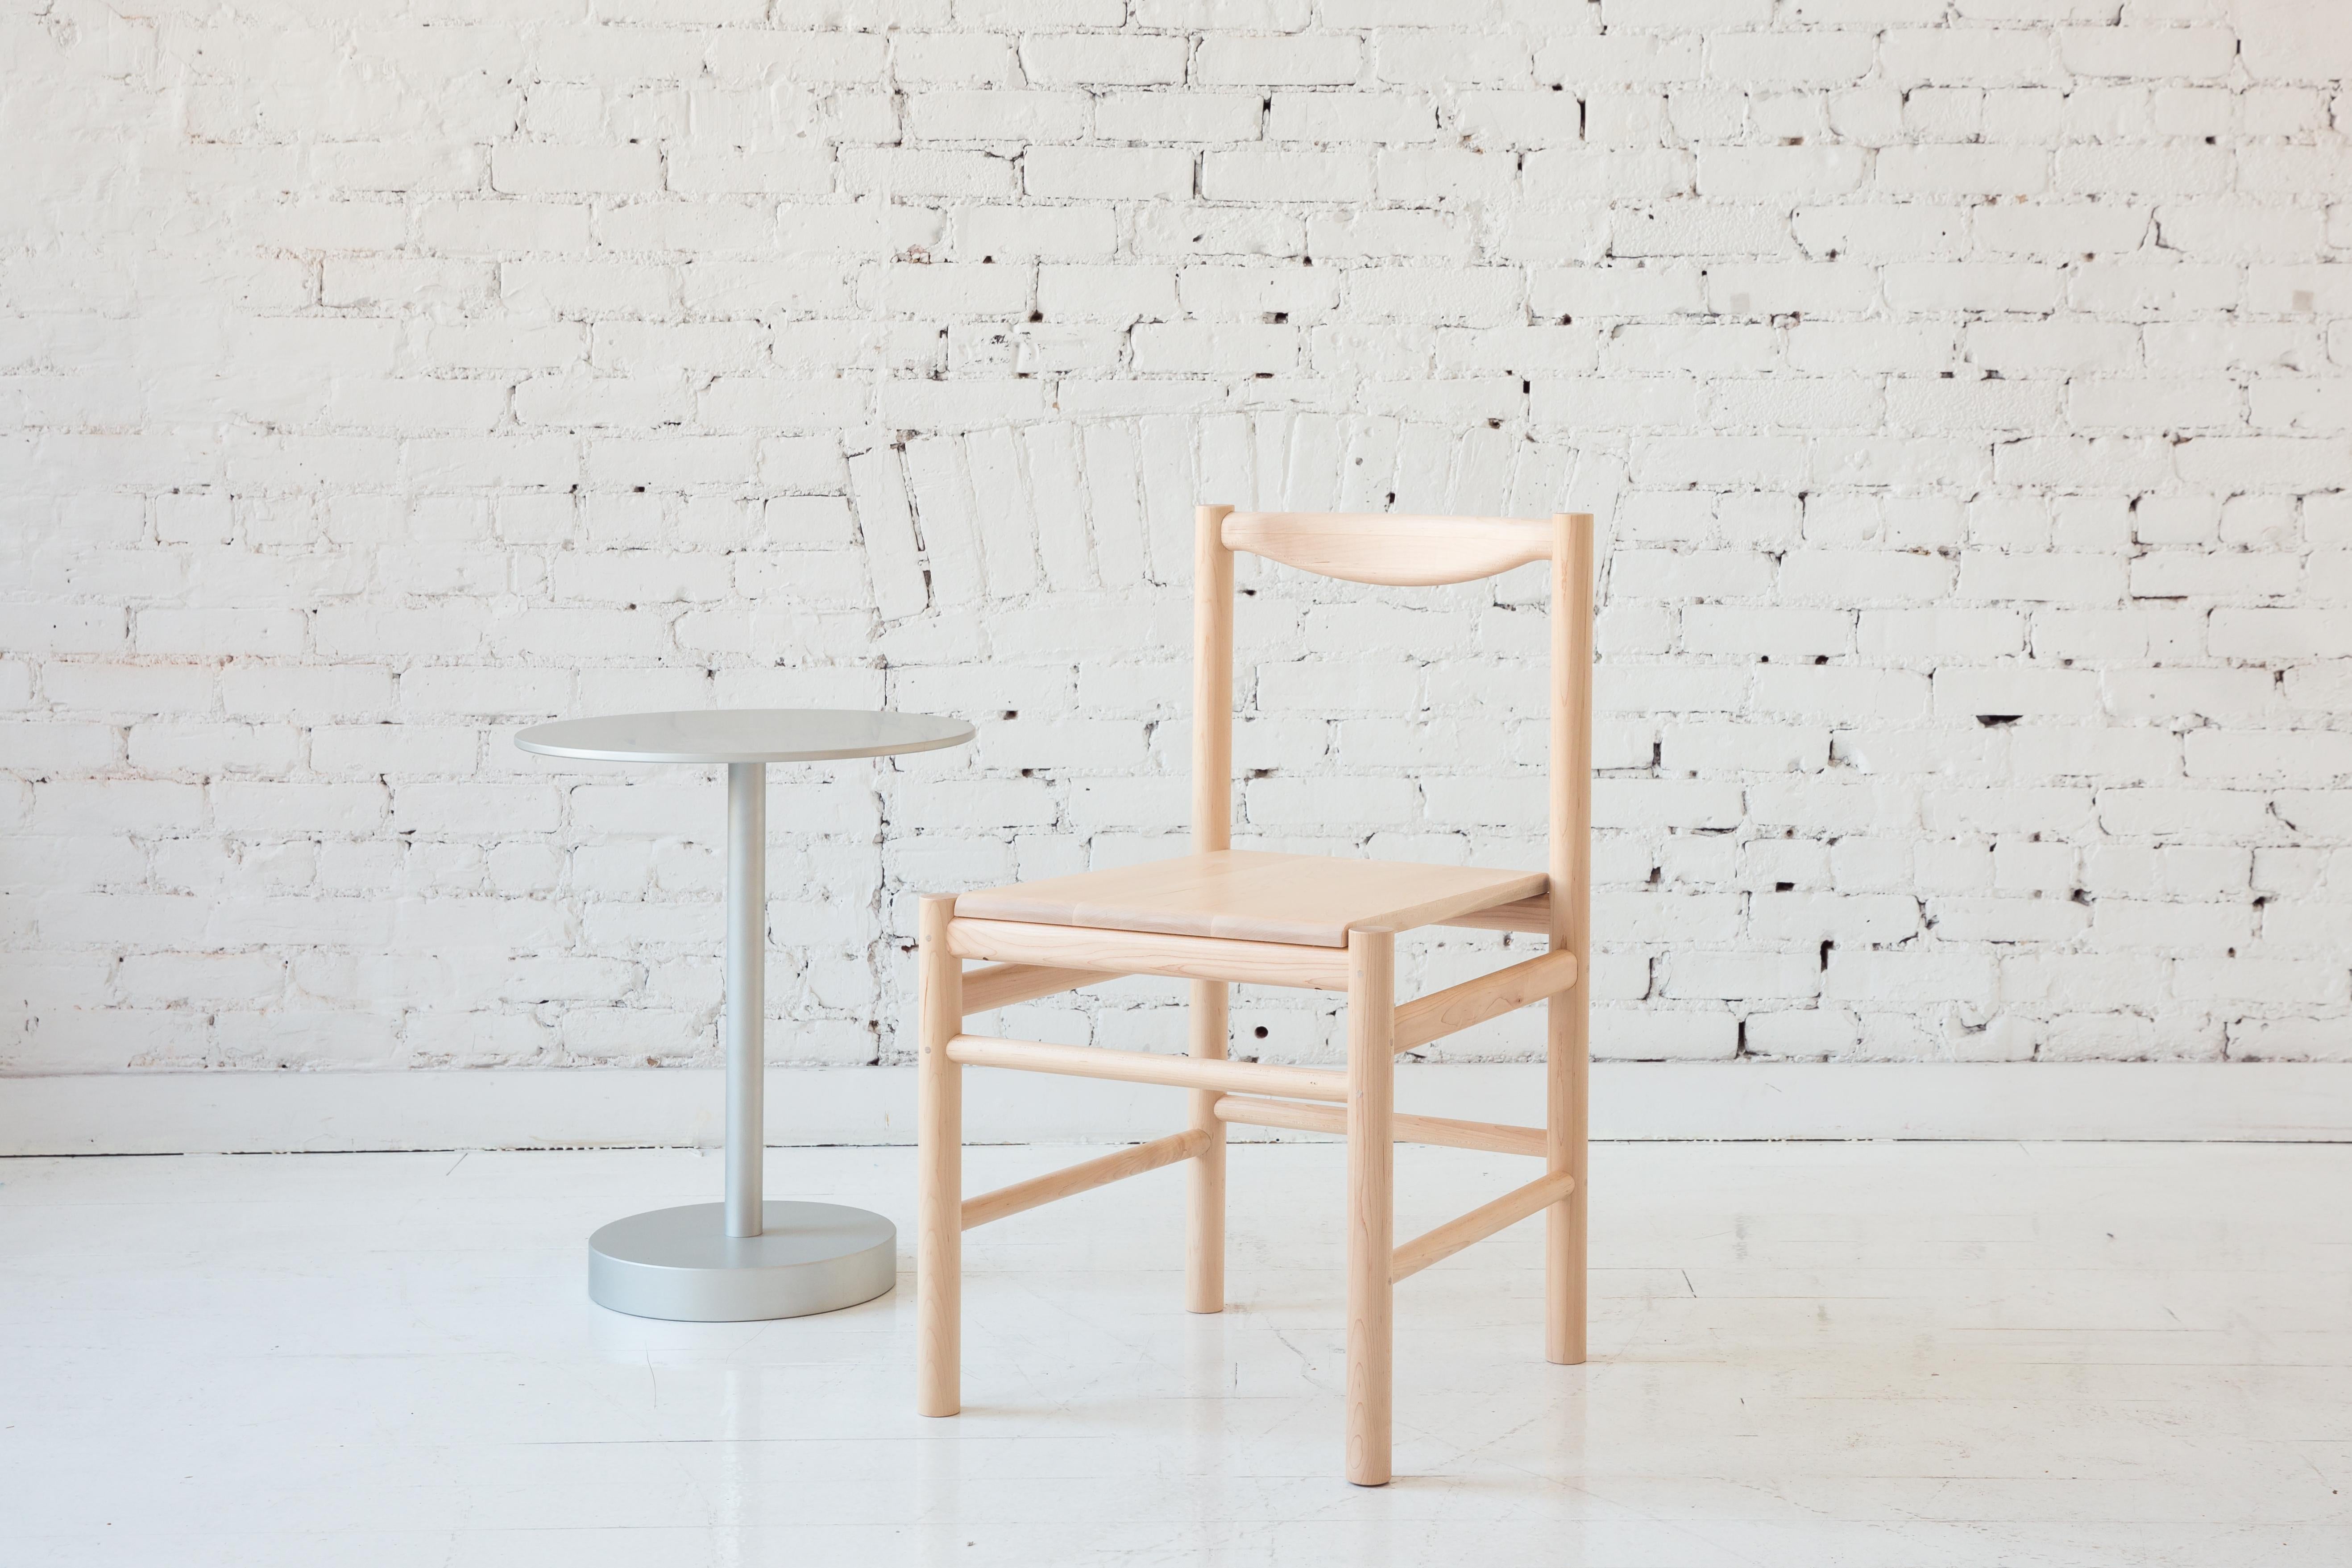 Chaise d'appoint en bois d'inspiration Shaker avec dossier confortable et profilé. Option pour une assise en bois simple ou une assise avec un coussin en cuir ou en shearling à profil bas. La simplicité de cette chaise lui permet de s'adapter à de